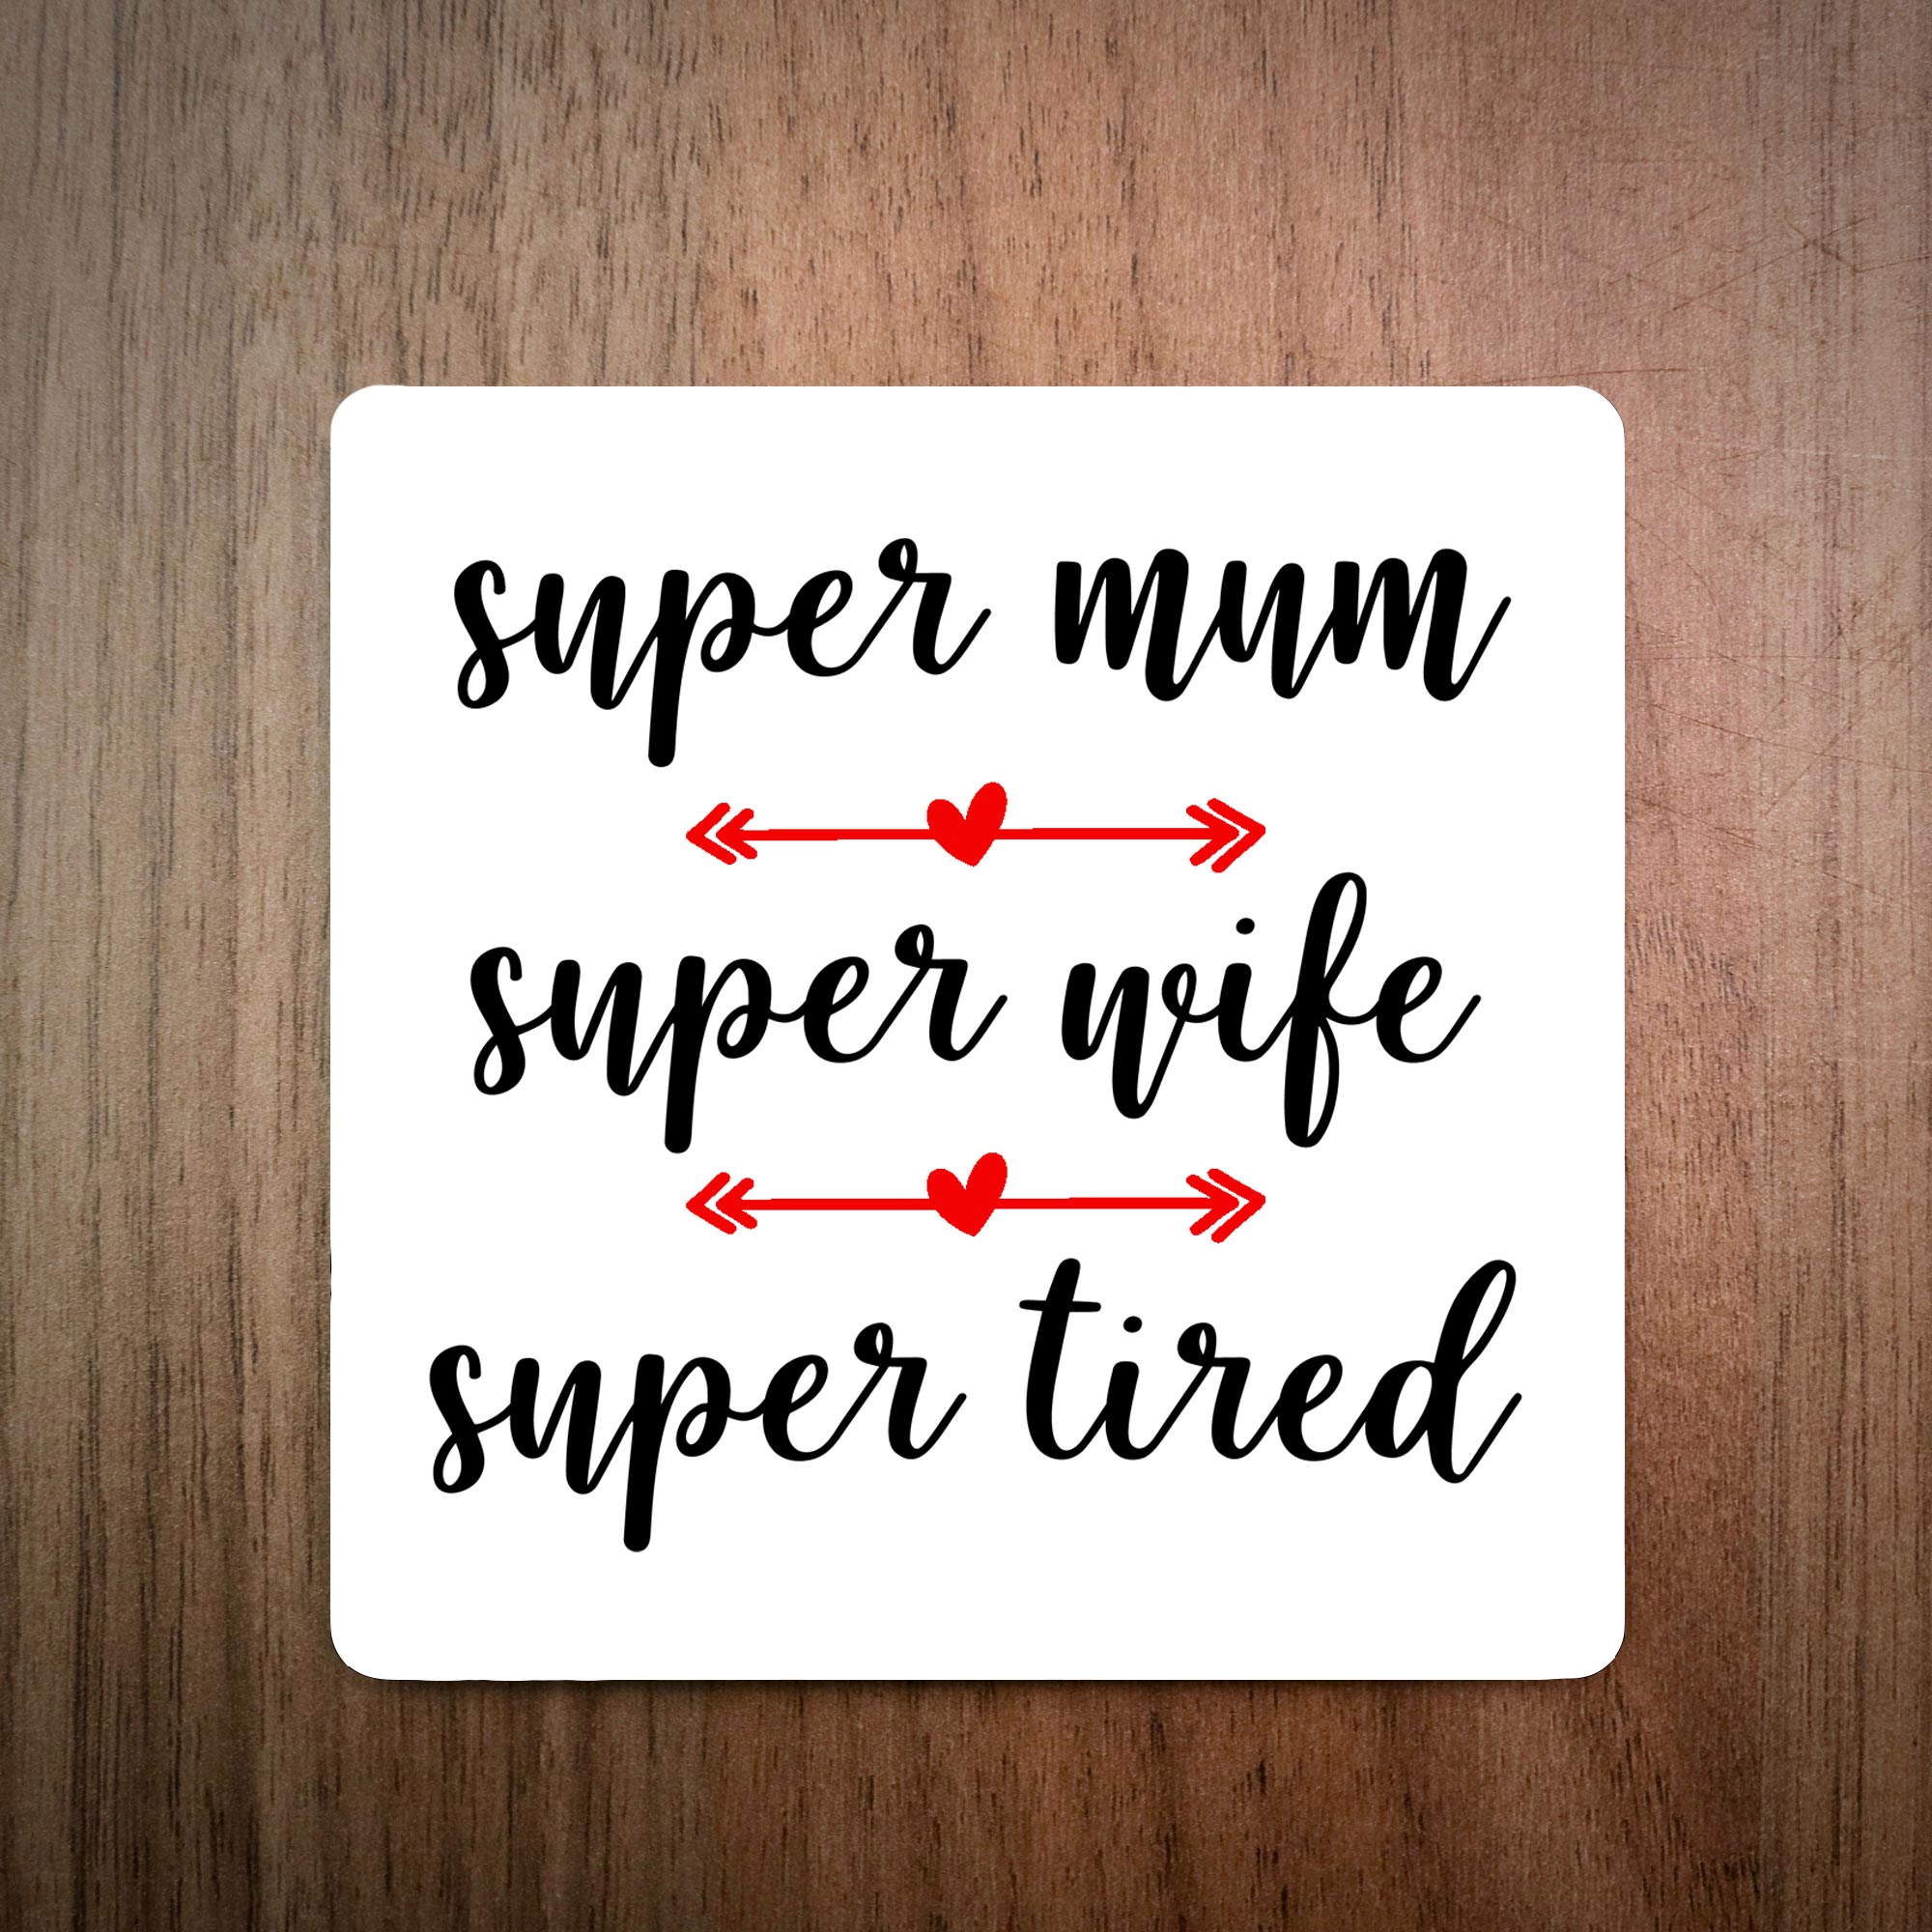 Super Mum Super Wife Super Tired Coaster